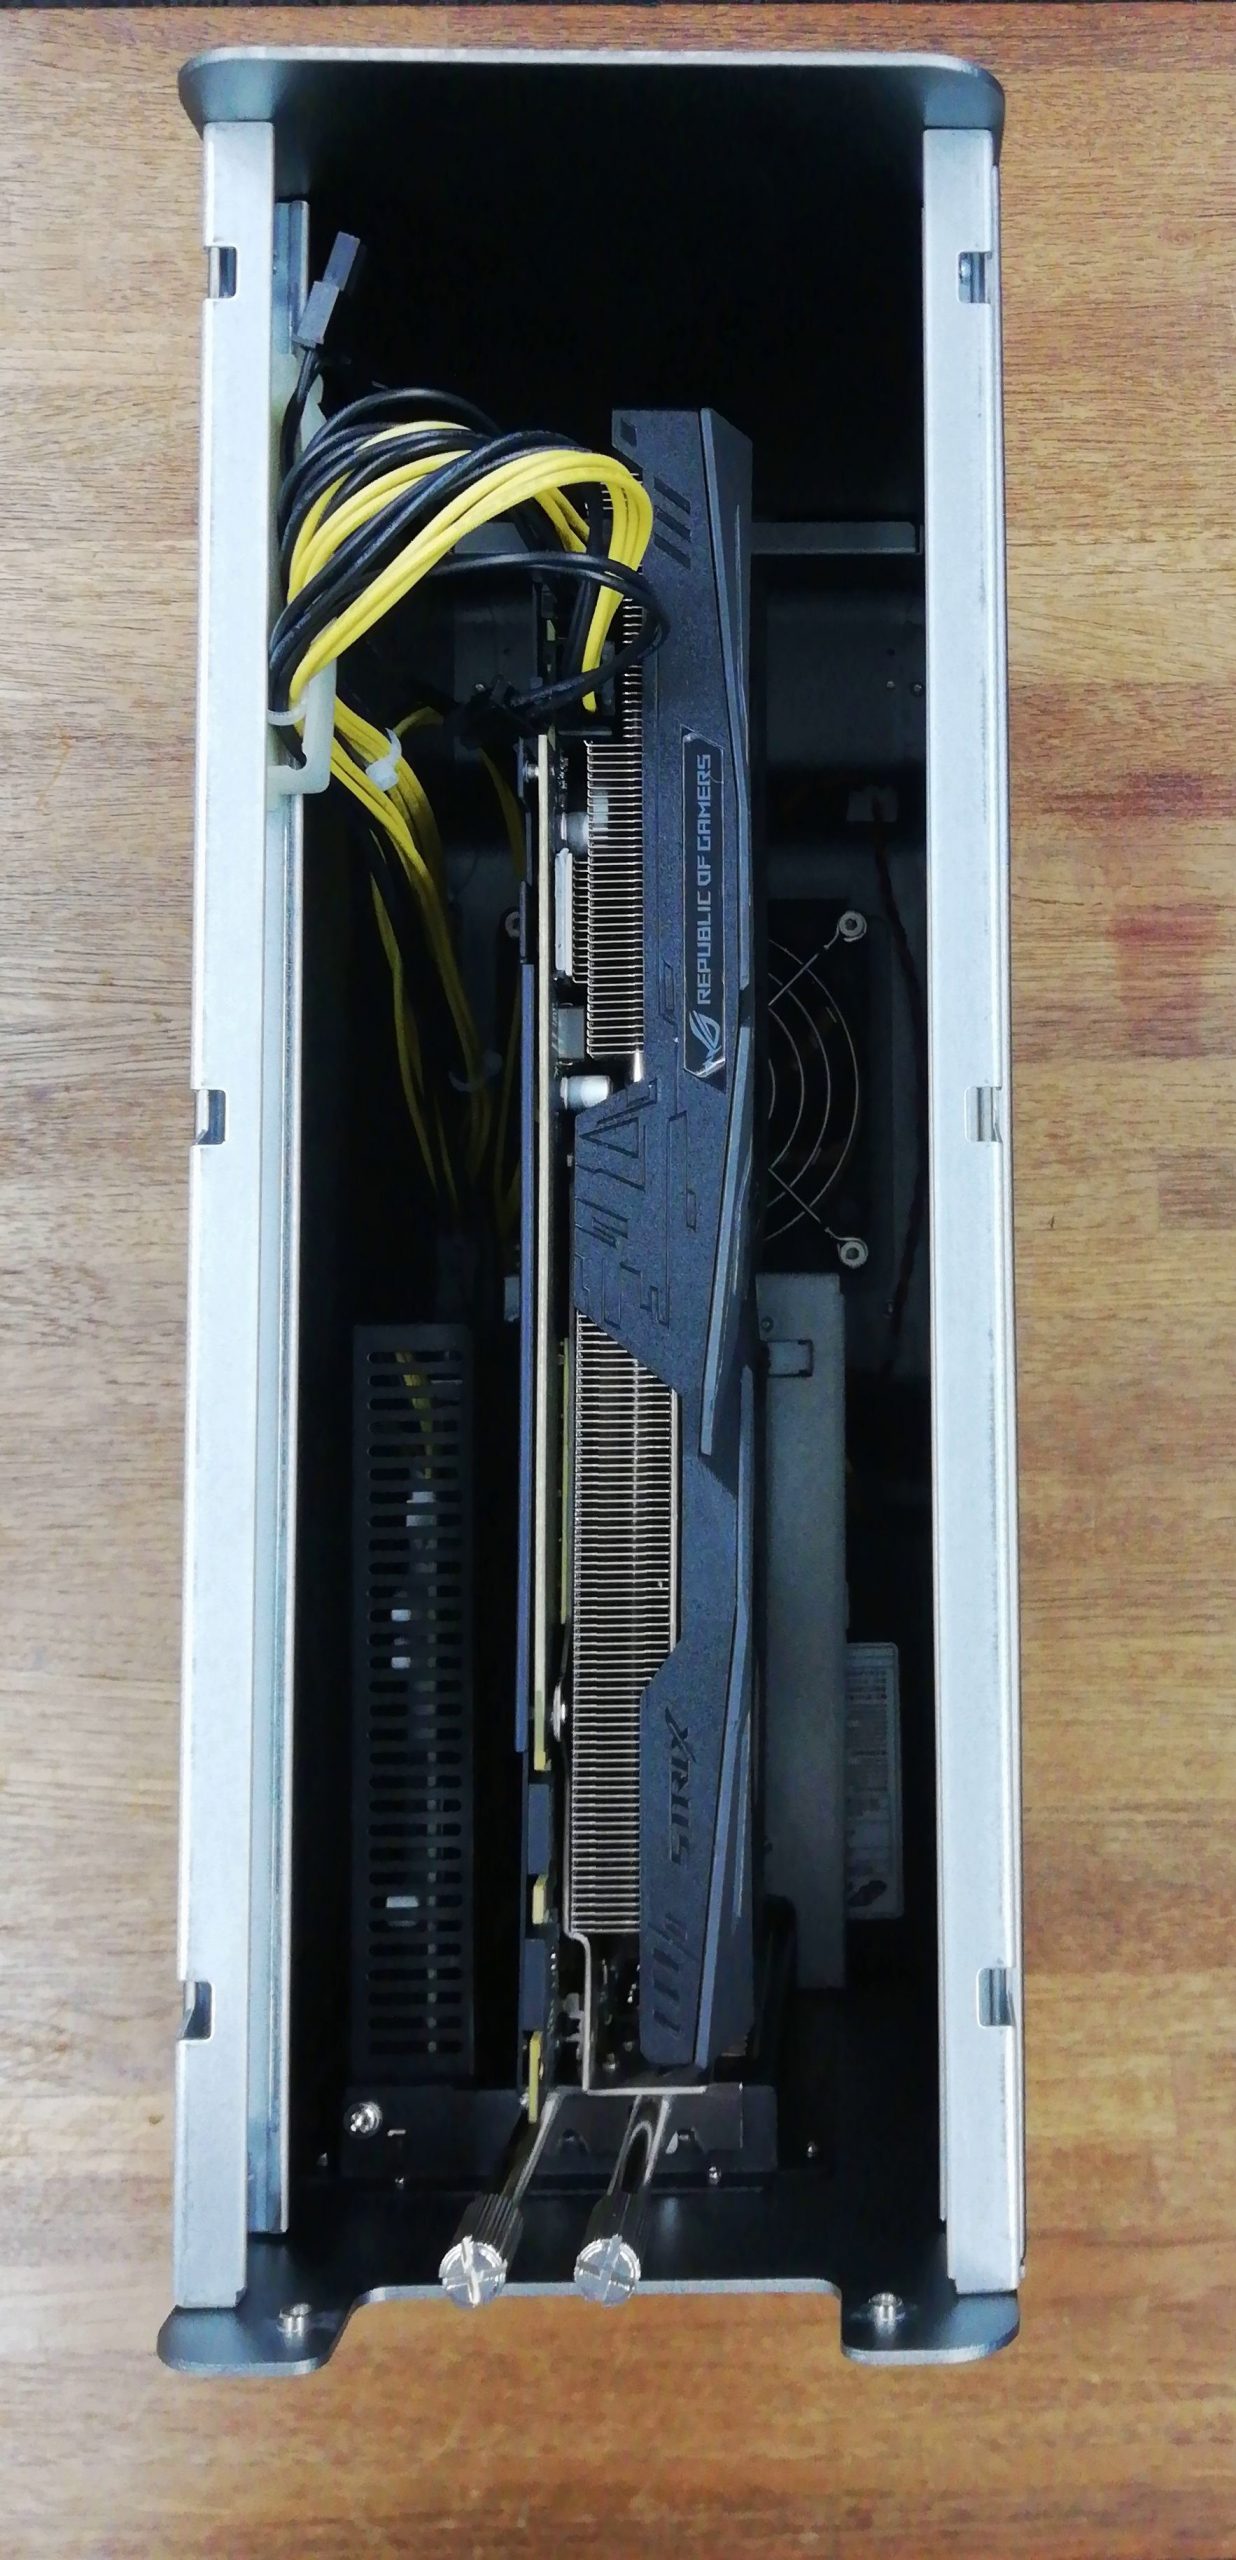 与え お買い得STORE第1支店AKiTiO Node Titan Thunderbolt 3対応 グラフィックボード向け PCI Express  外付け拡張ボックス macOS W